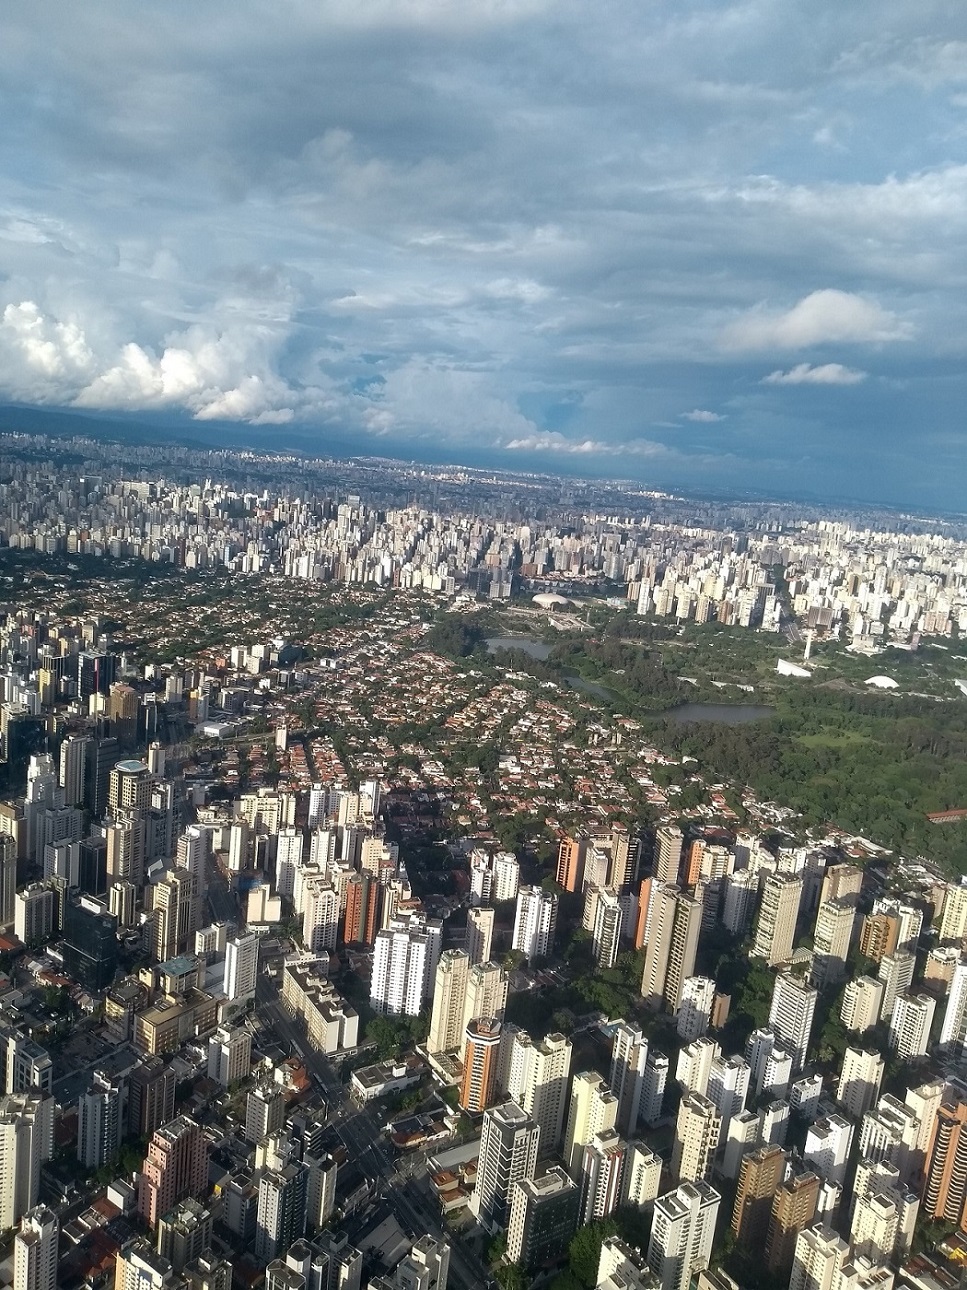 Corrida Internacional de São Silvestre São Paulo